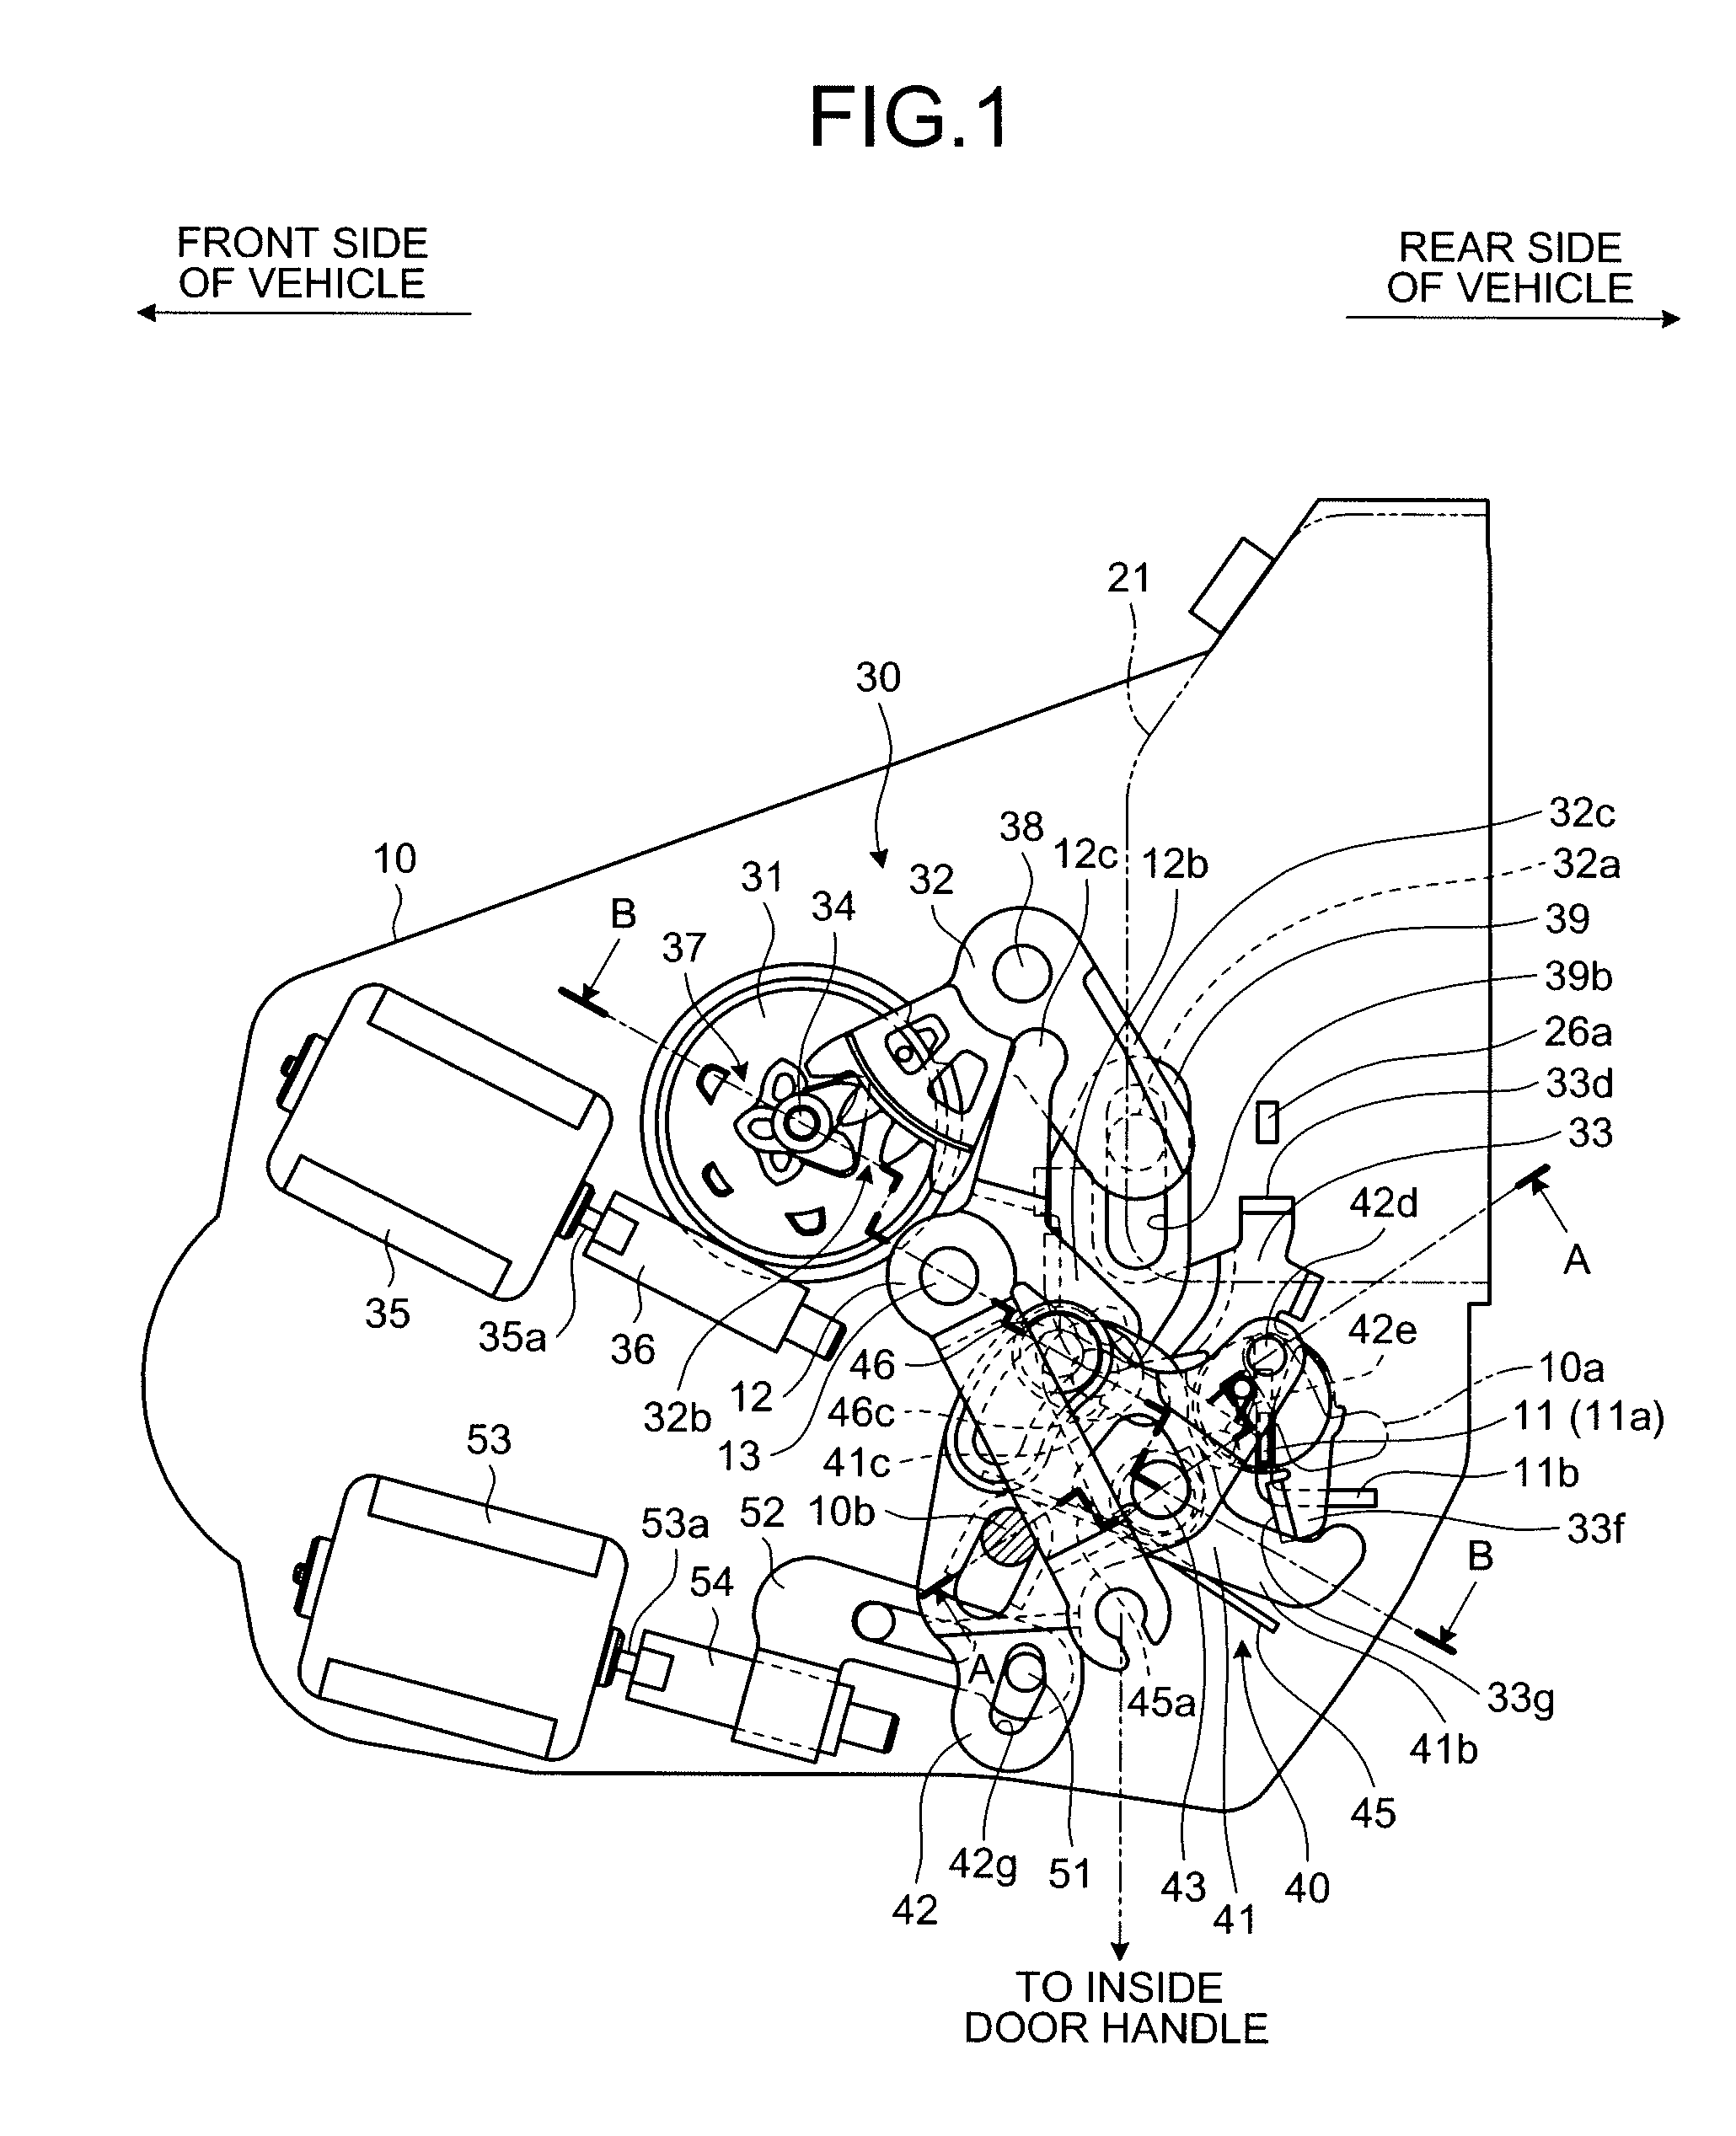 Vehicle door lock device